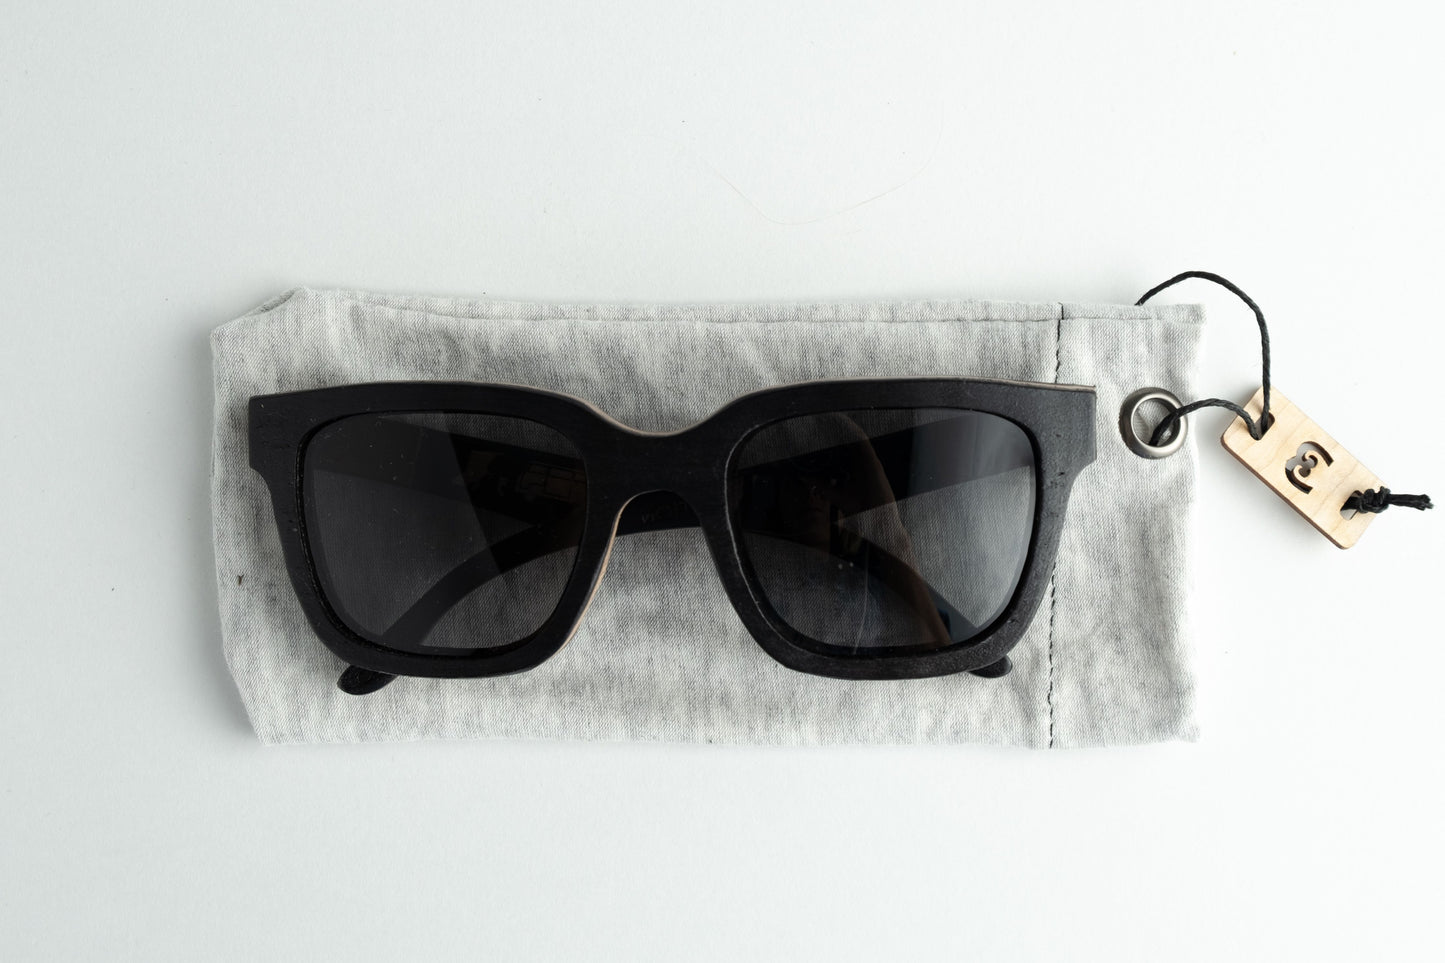 sunglasses fabric case